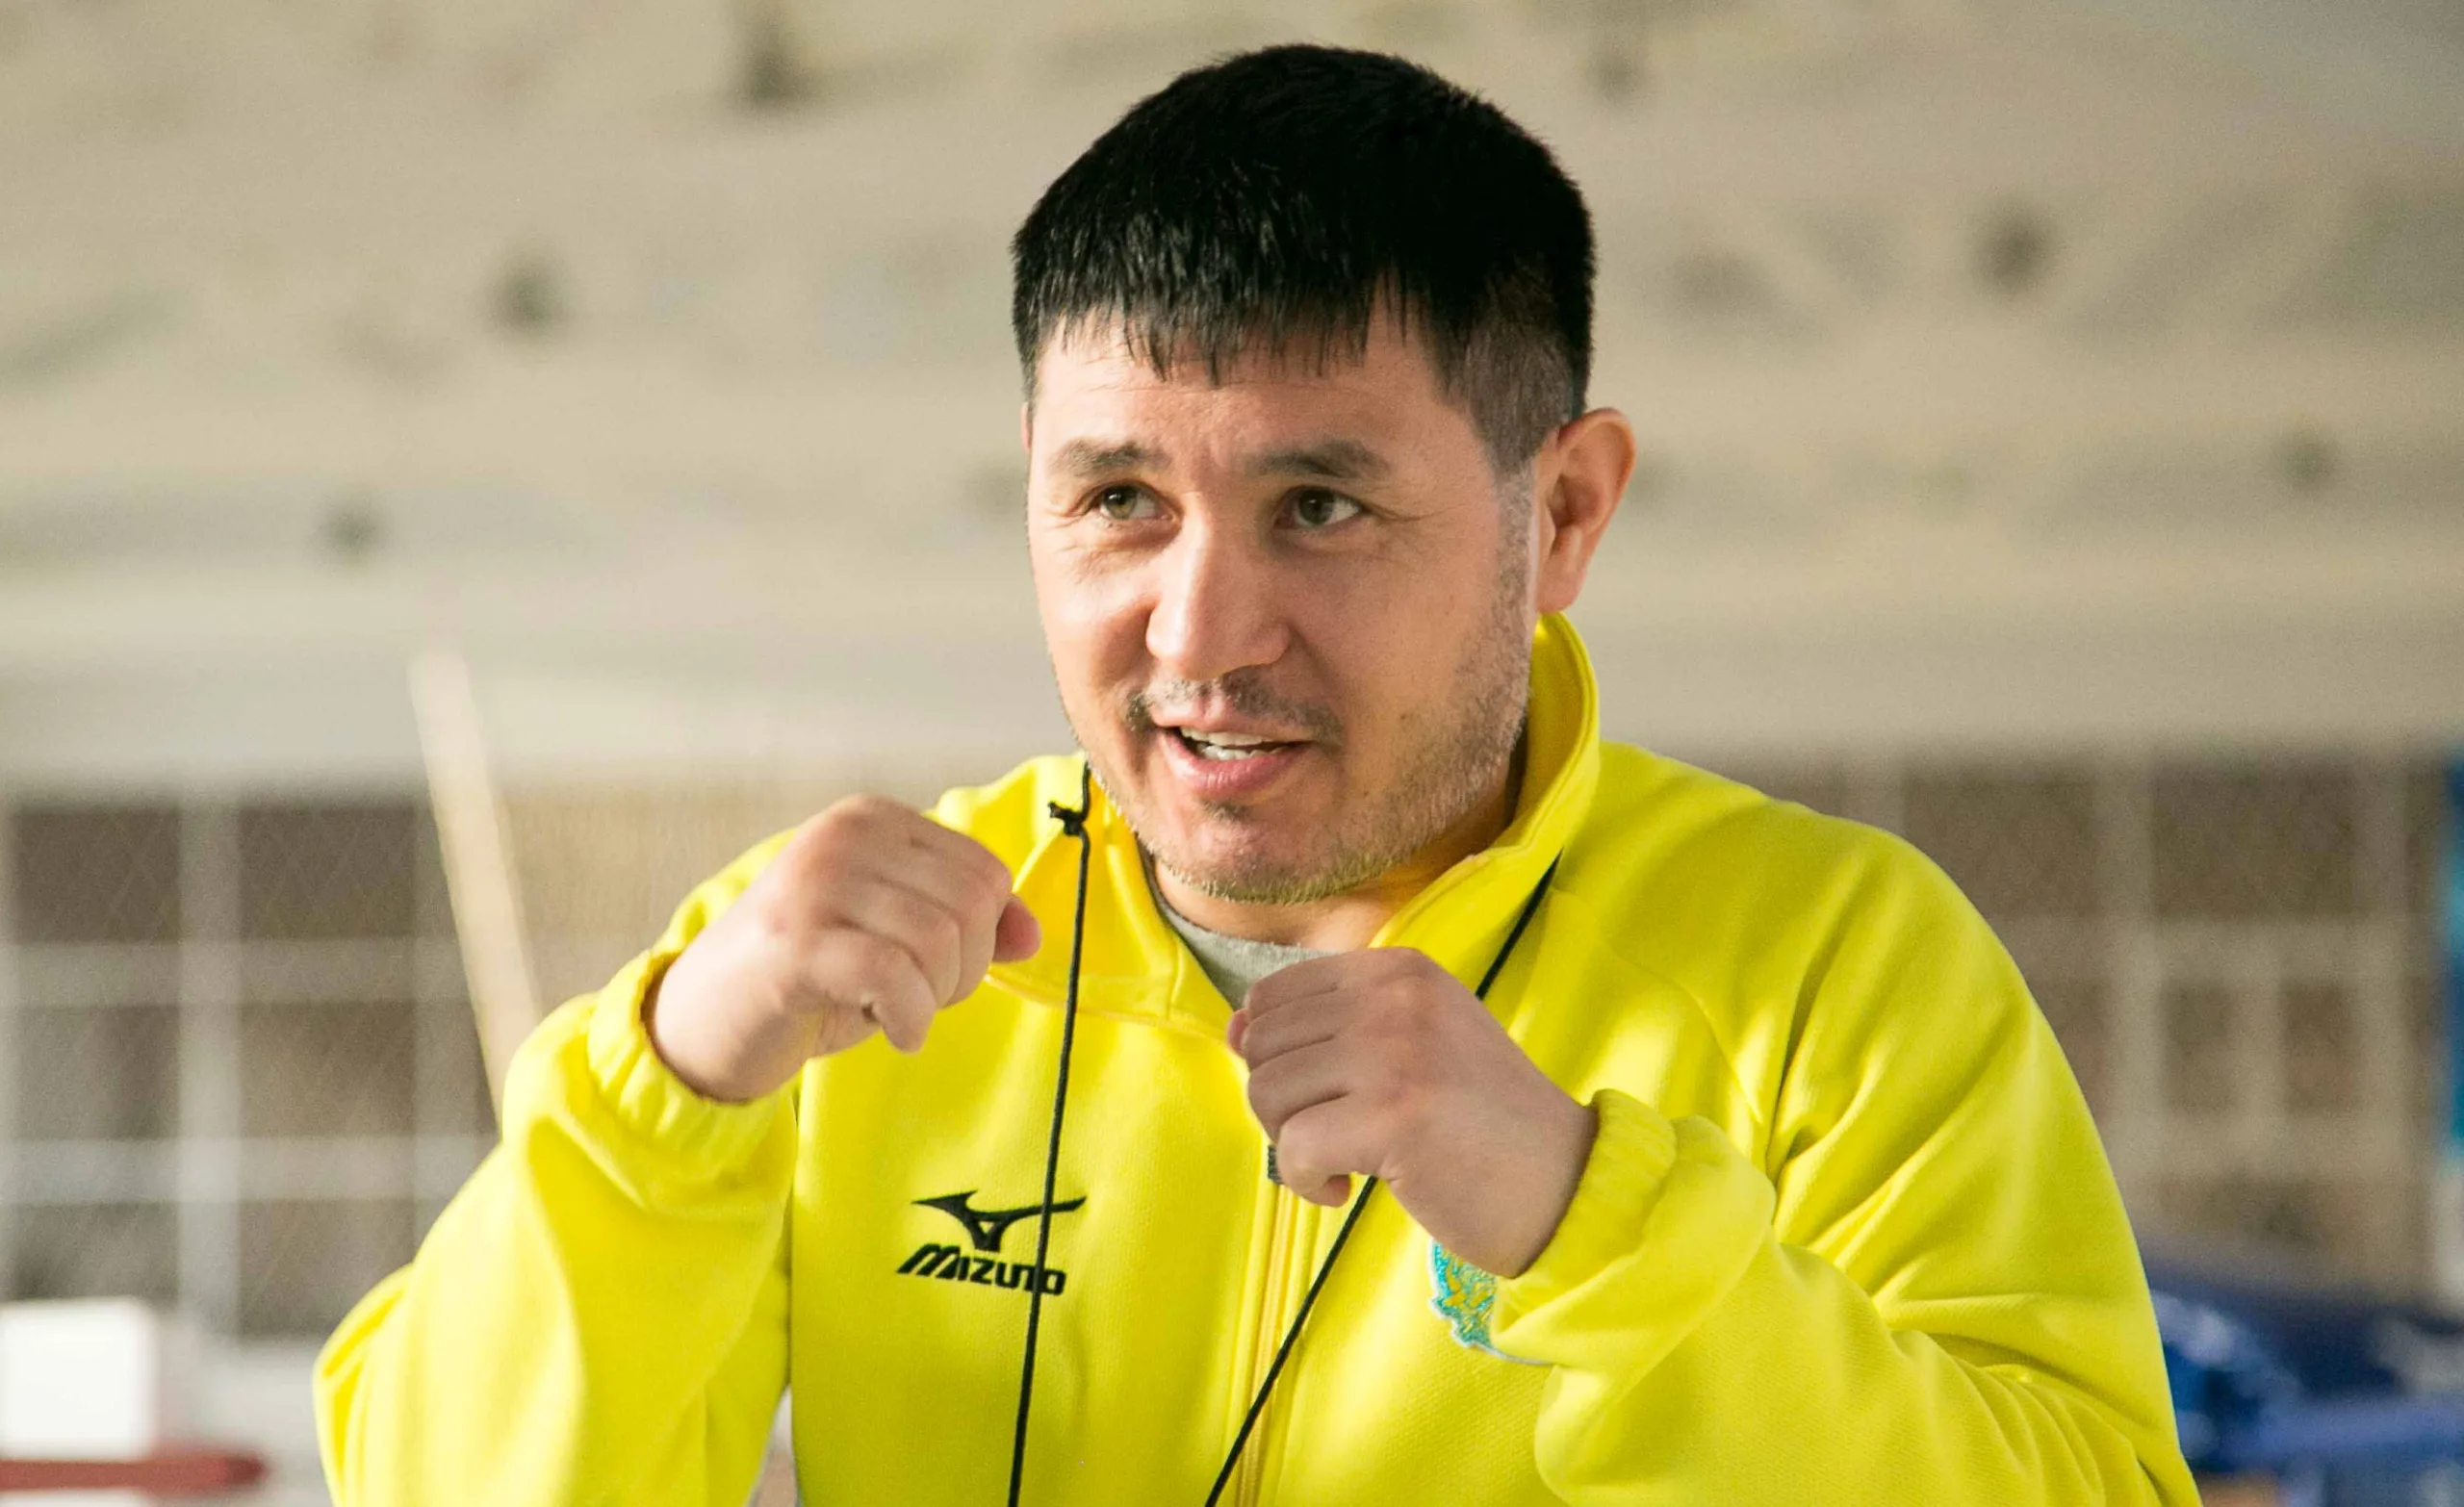 Главный тренер сборной Казахстана по боксу Мырзагали Айтжанов. Фото с сайта olimpic.kz